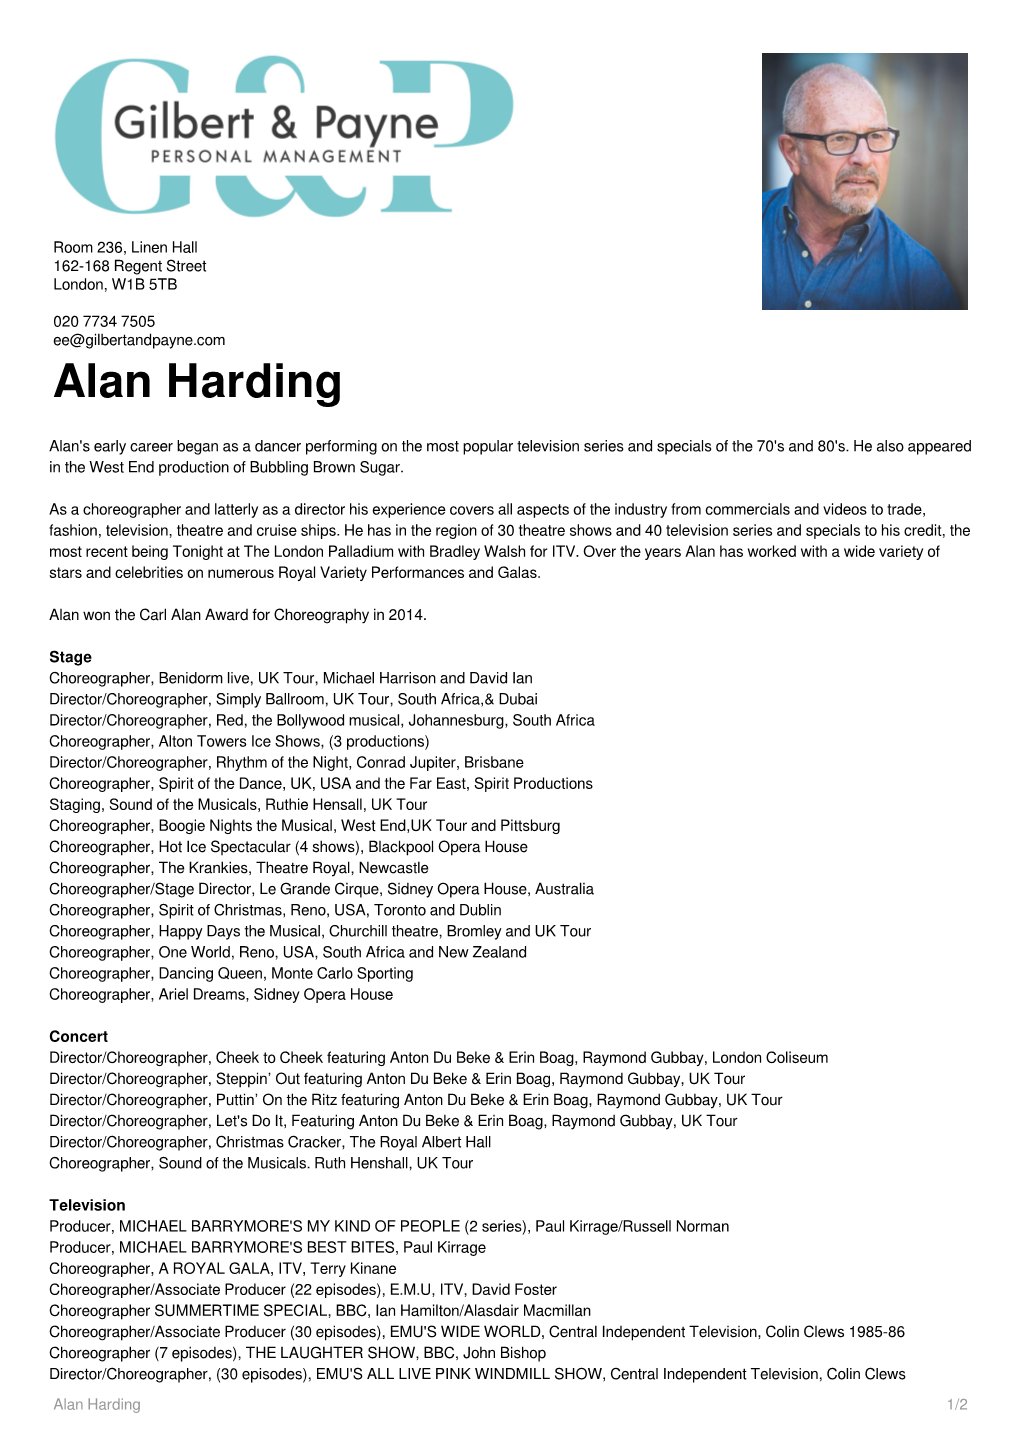 Alan Harding